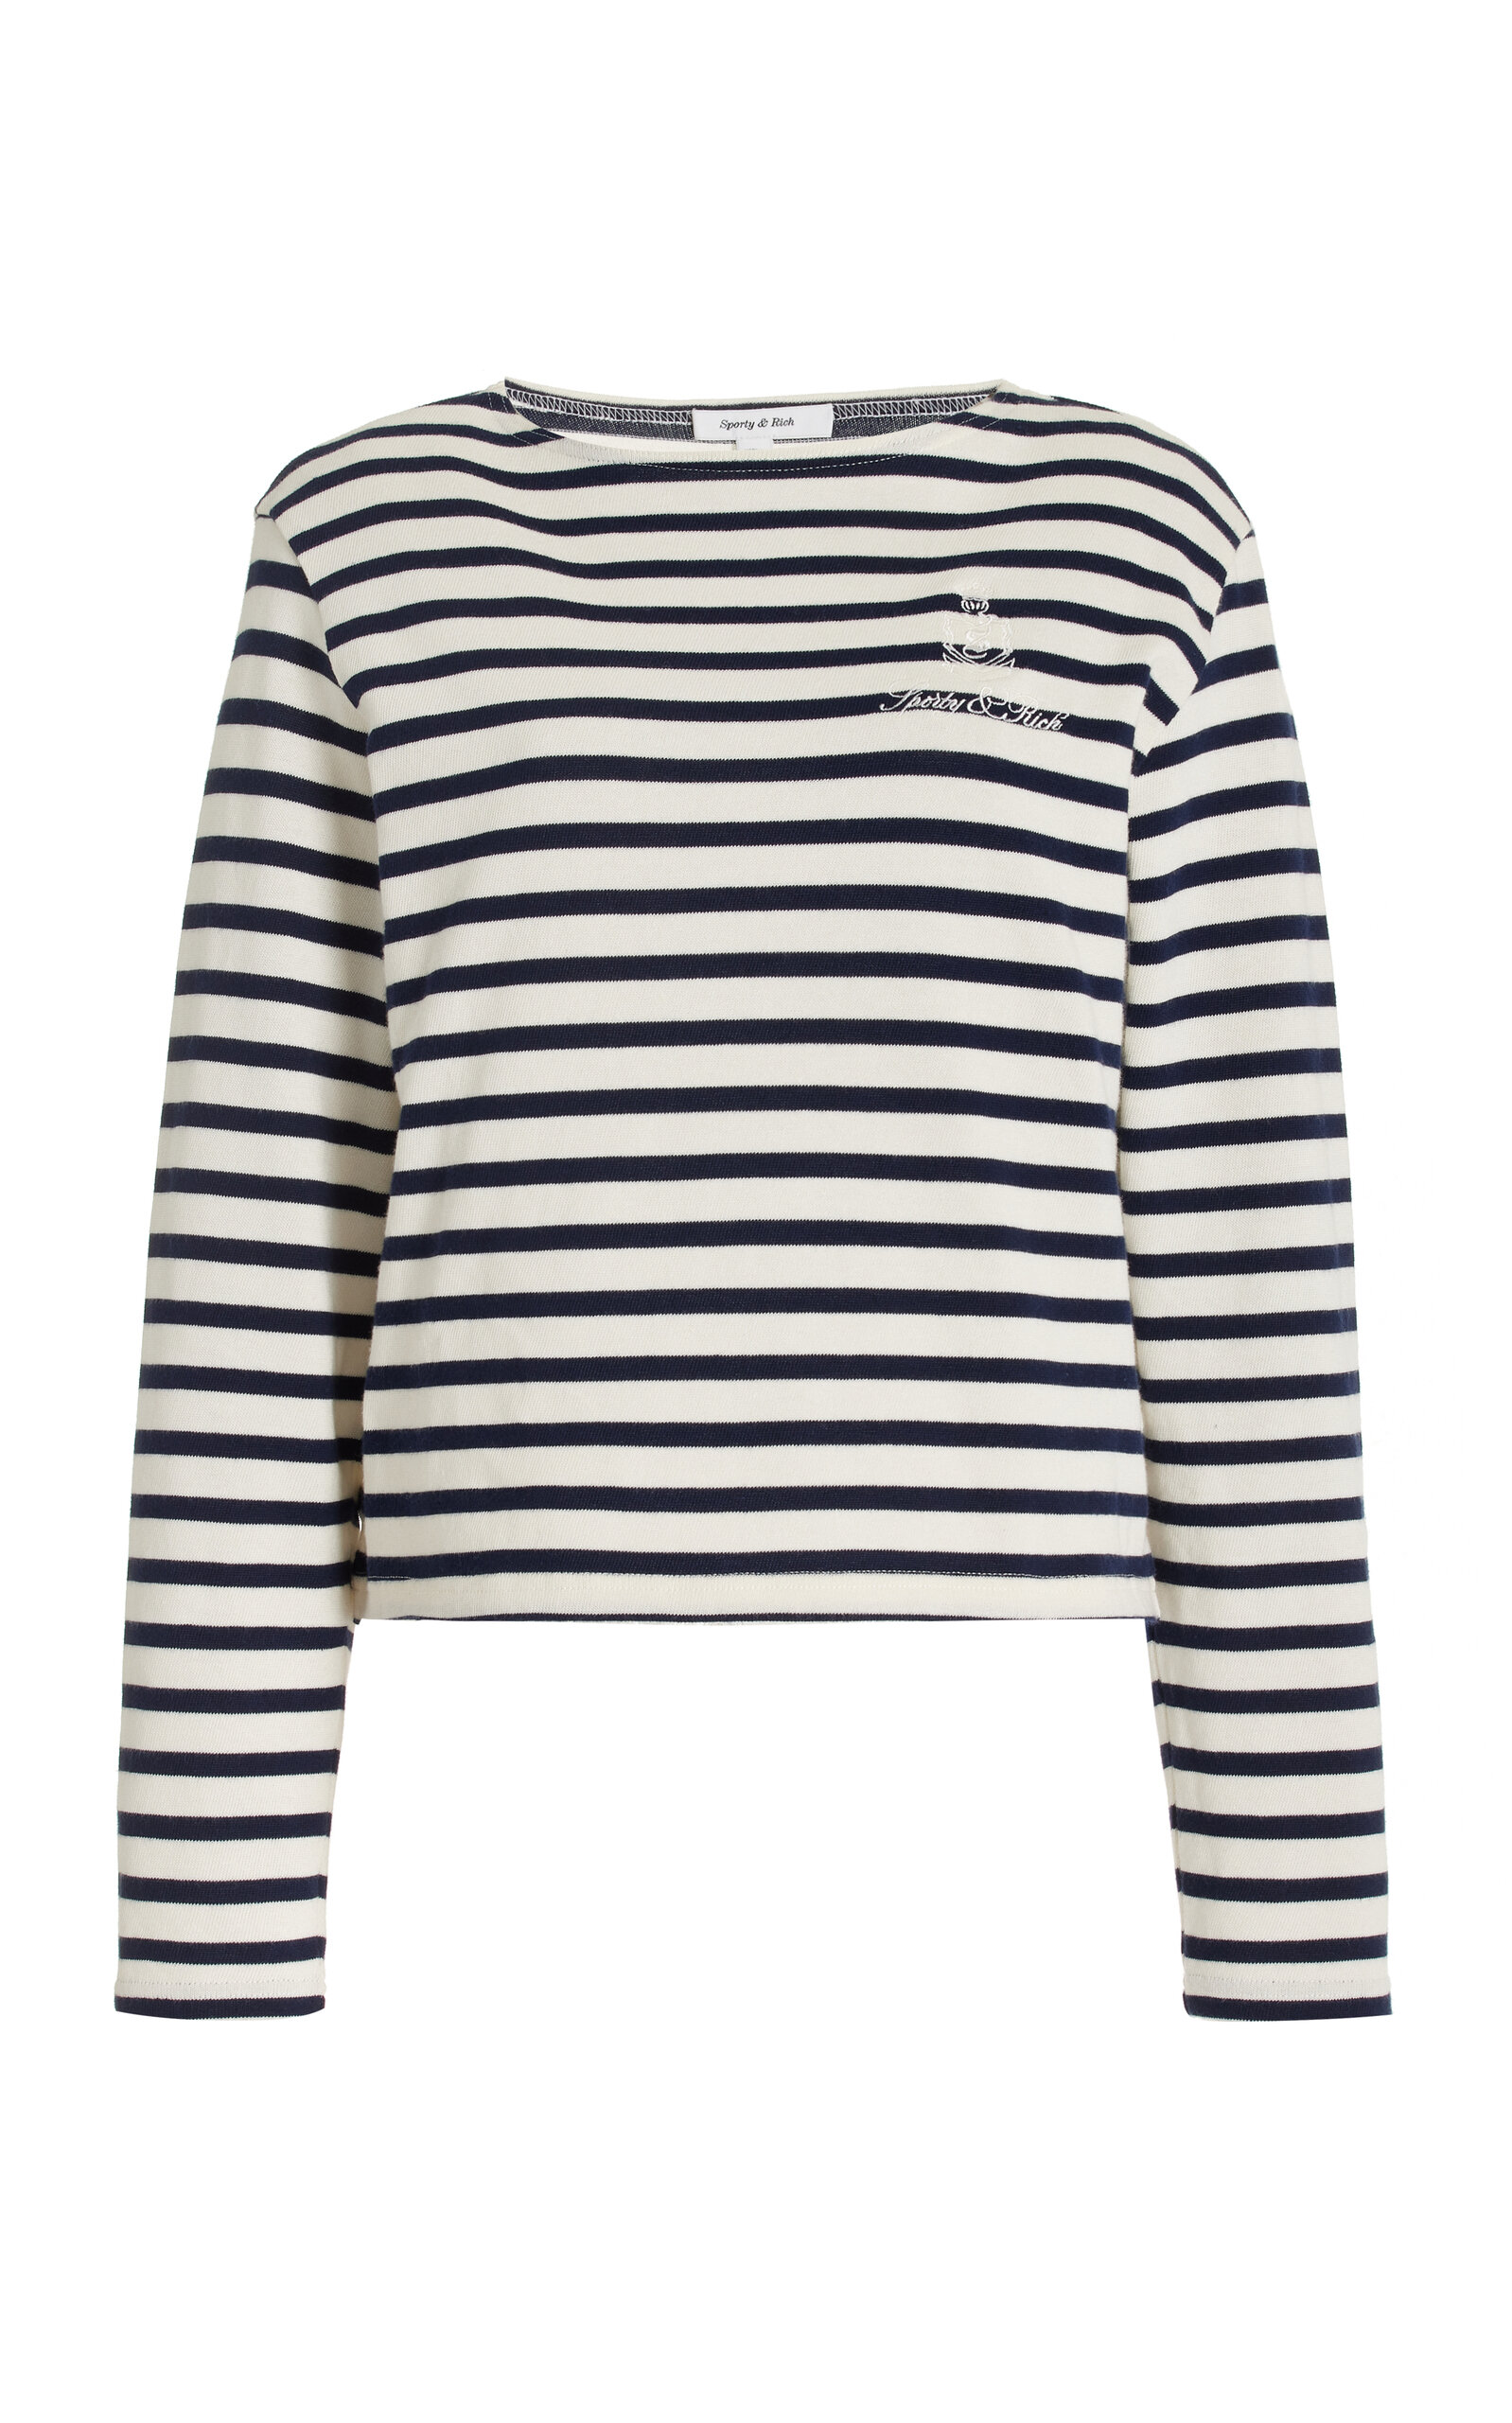 Sporty & Rich - Women's Vendome Breton Striped Cotton Top  - Stripe - XS - Moda Operandi